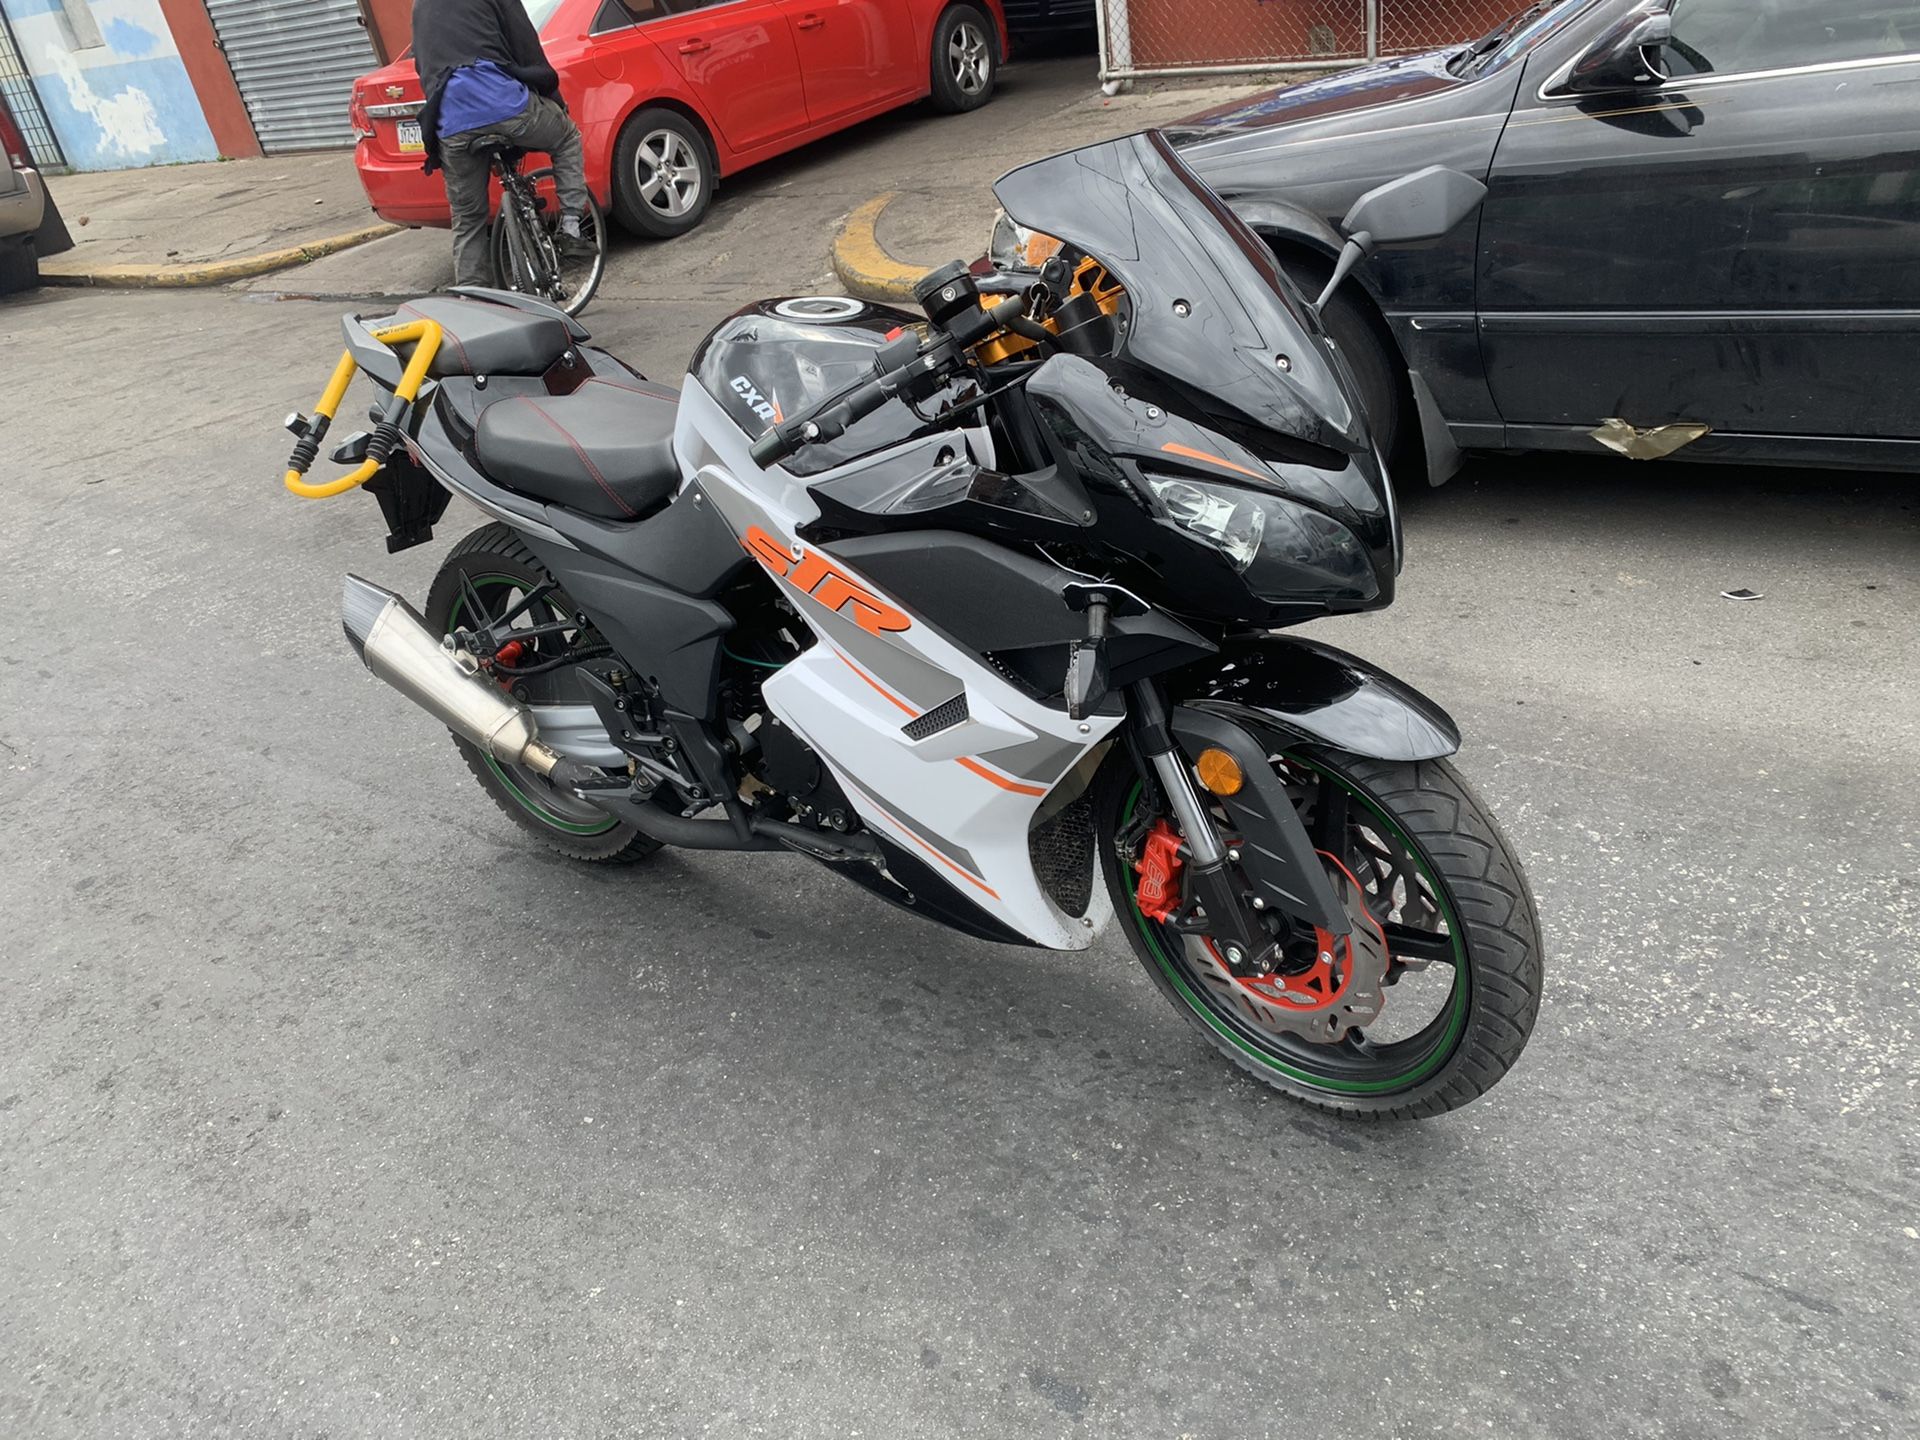 Dong fang 250 cc motorcycle 2019